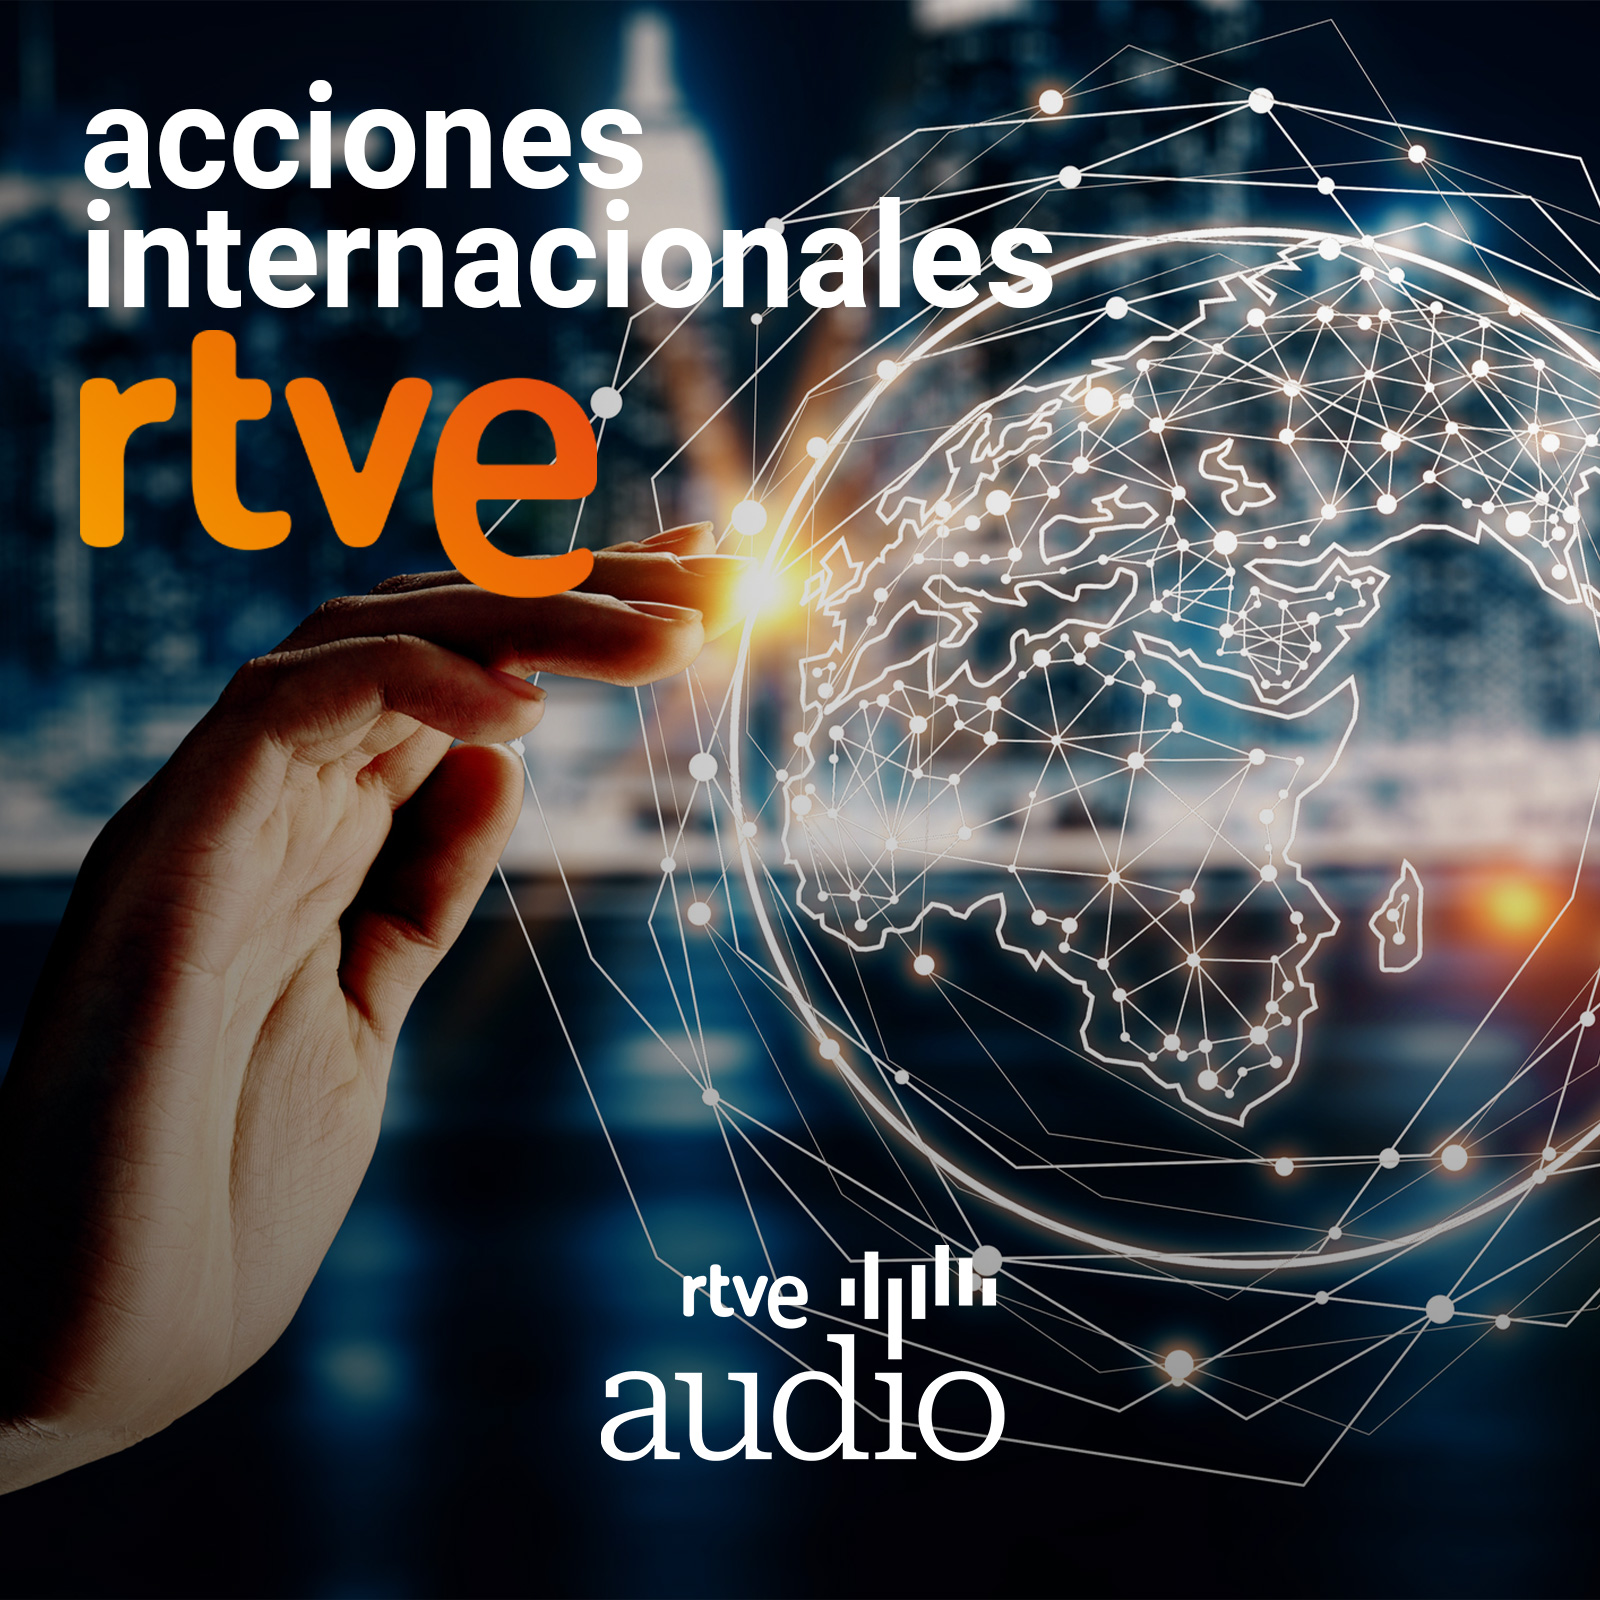 Acciones internacionales RTVE